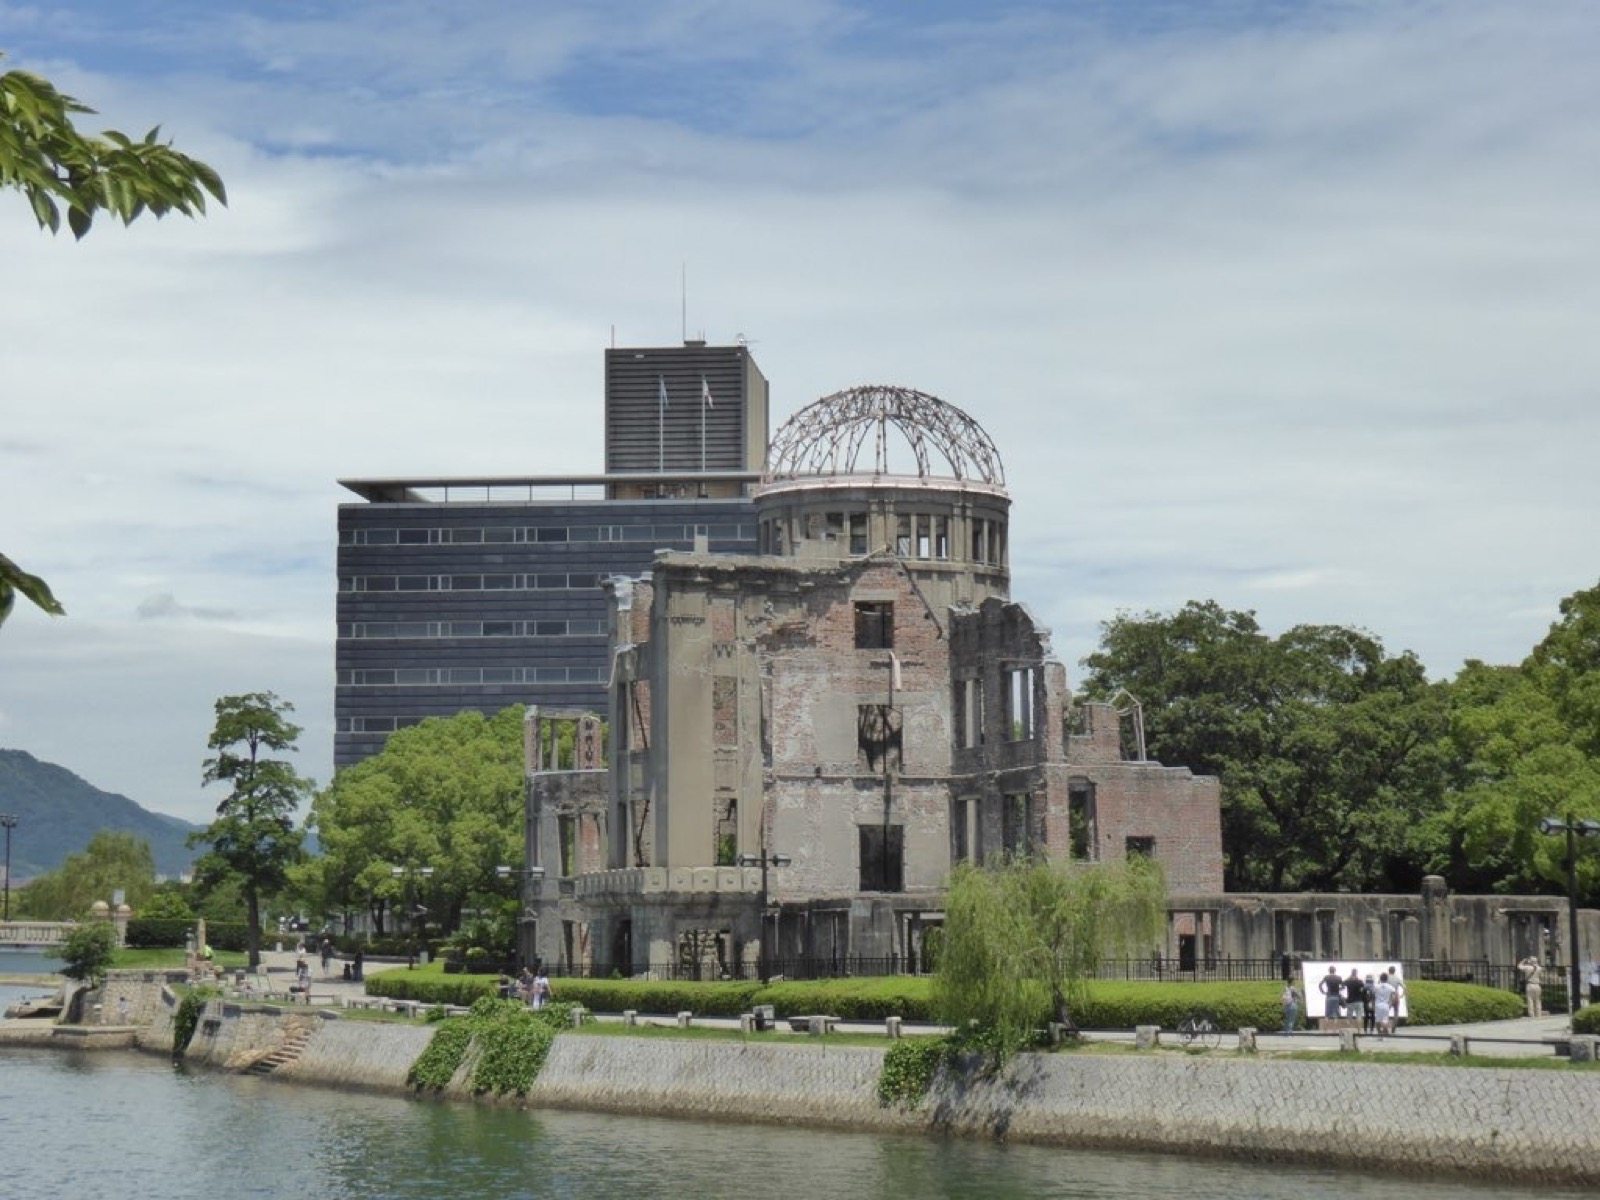 Photo of Hiroshima Atomic Bomb Dome, Japan (Genbaku Dōmu, Hiroshima by Mikel Santamaria)